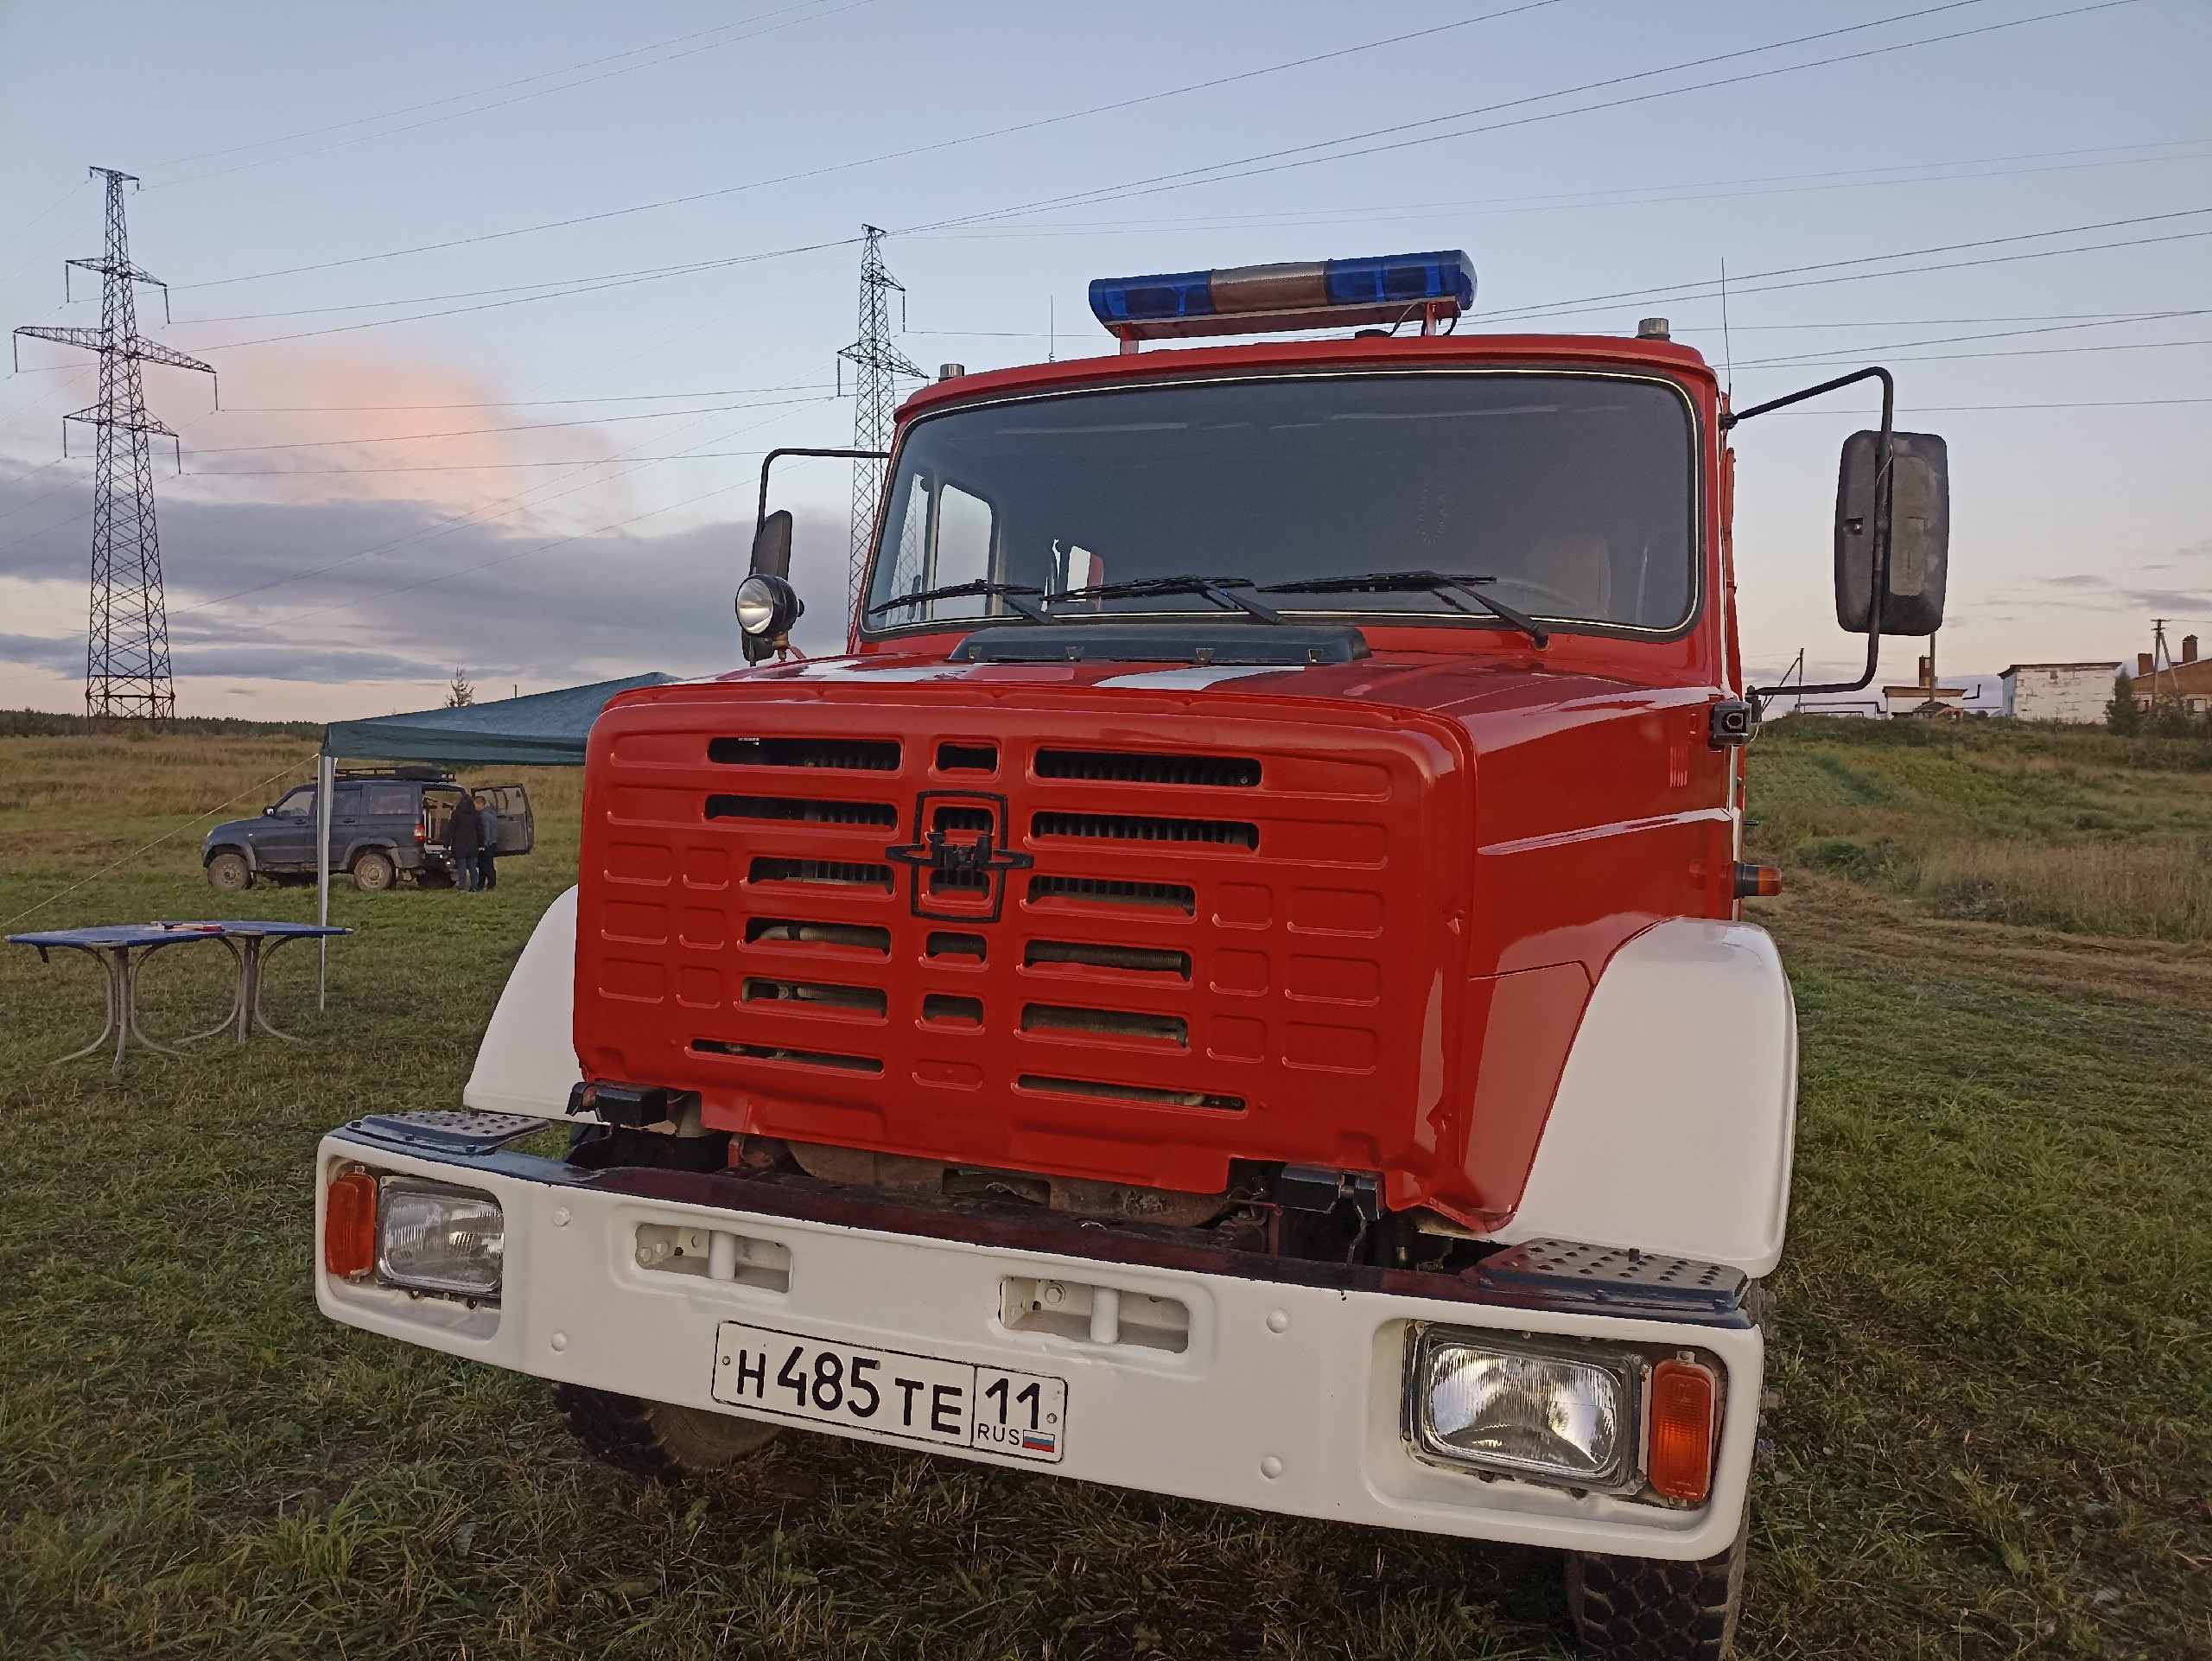 В населённых пунктах Коми завершается строительство пожарных частей